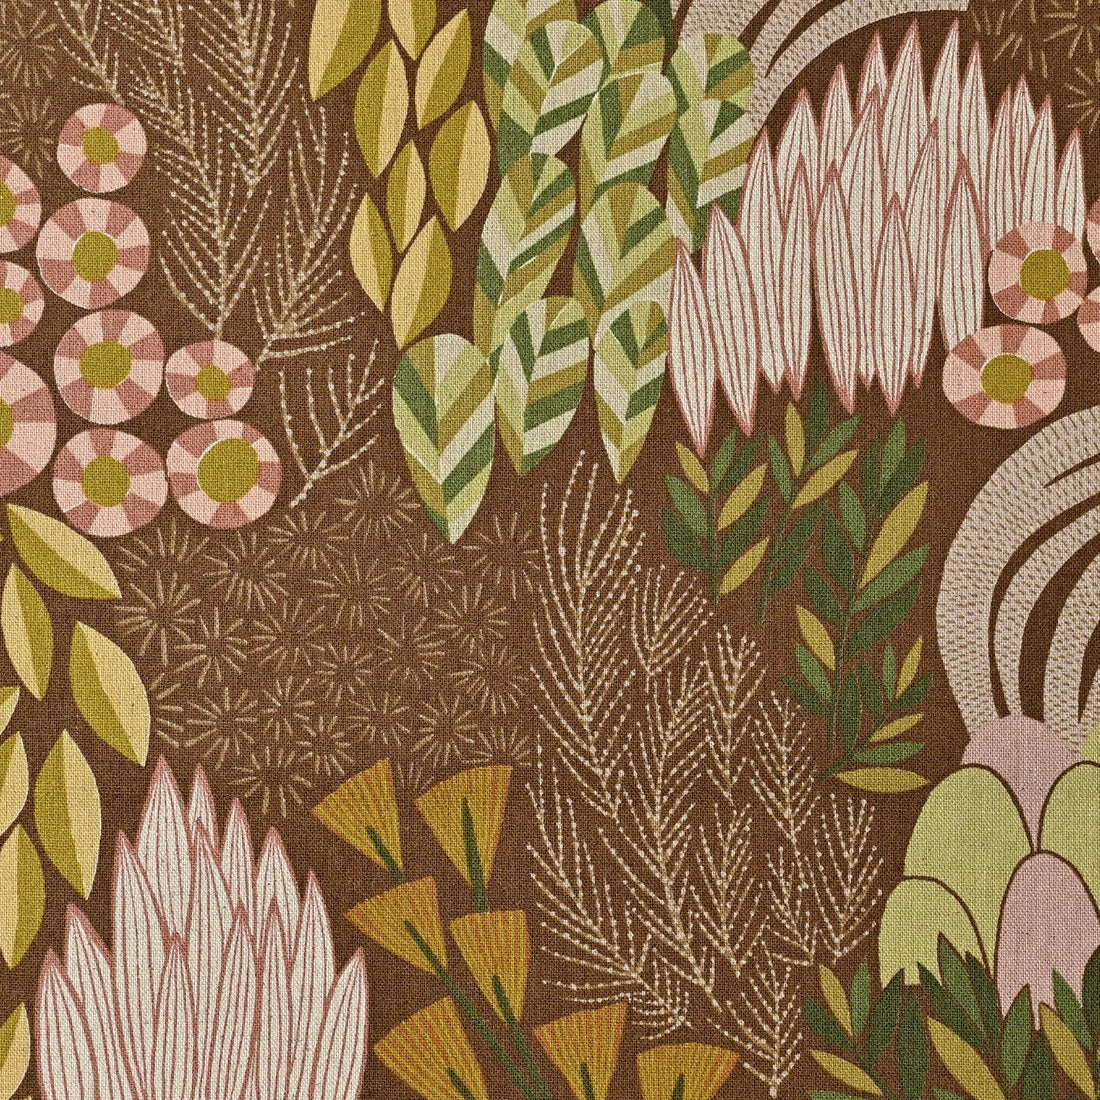 Bloom by Bookhou - Garden Cotton Linen Canvas EKX-1400-1